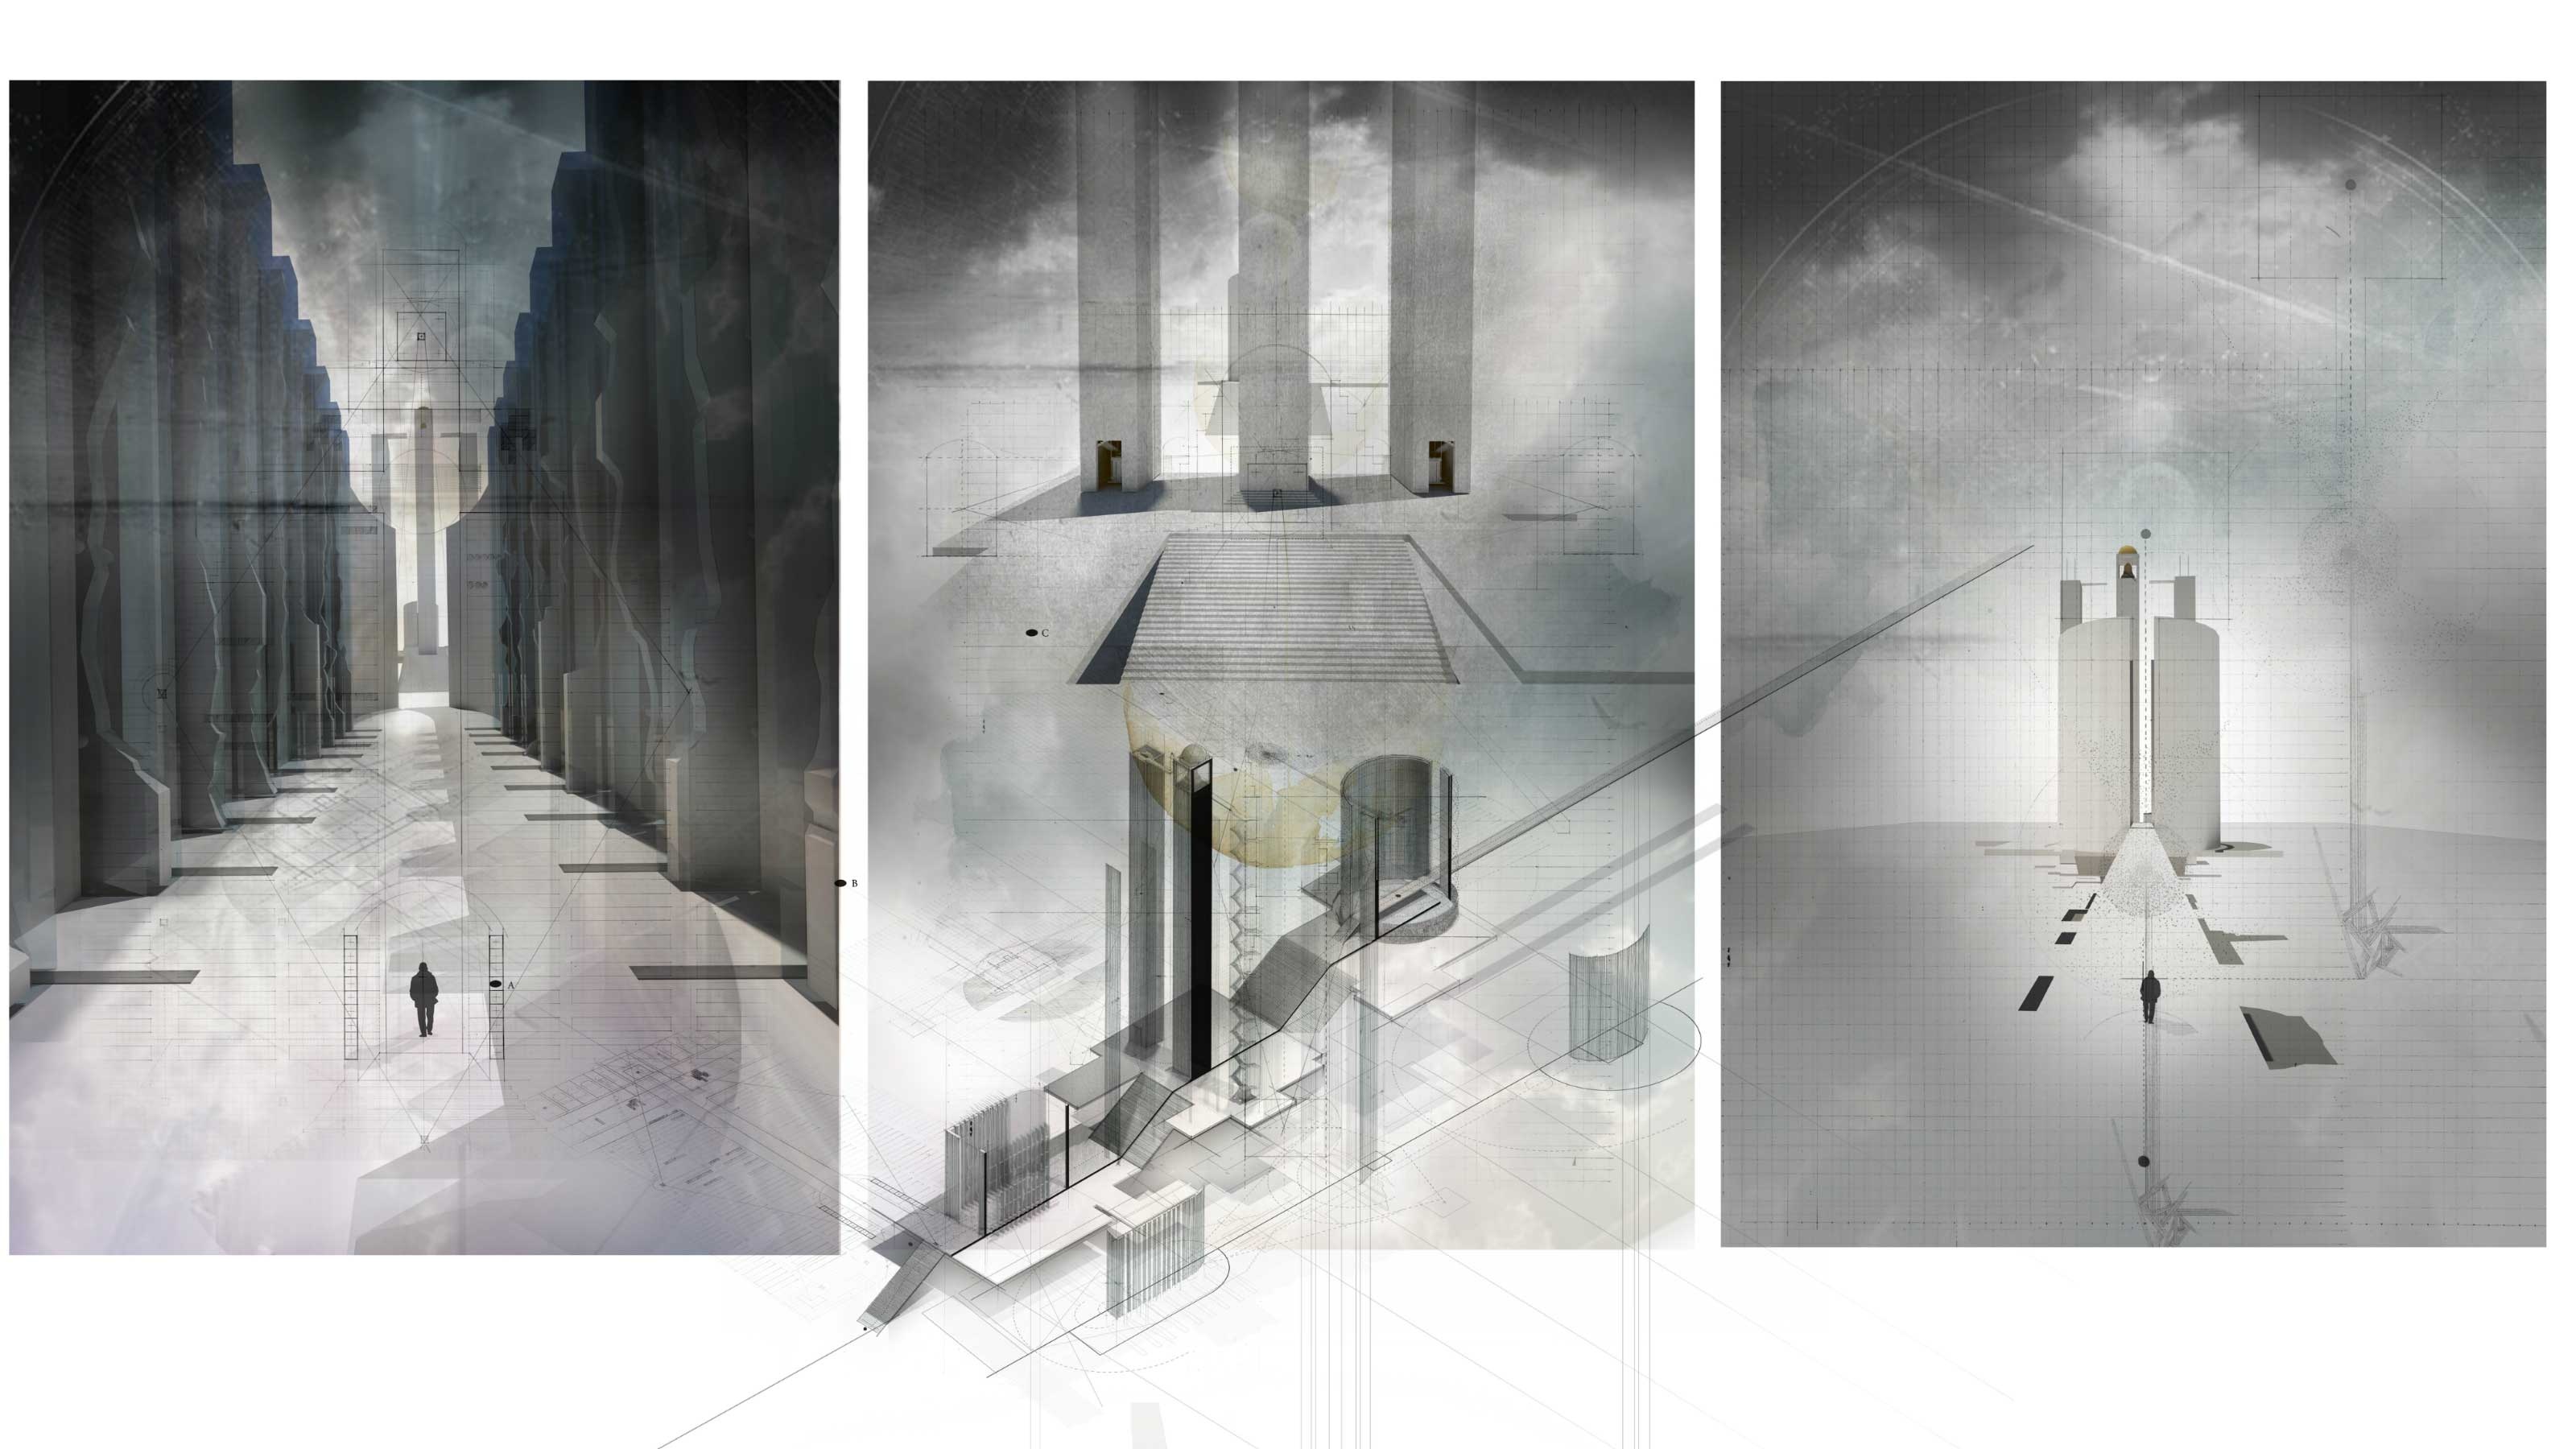 Three monochrome collages of futuristic architectural designs